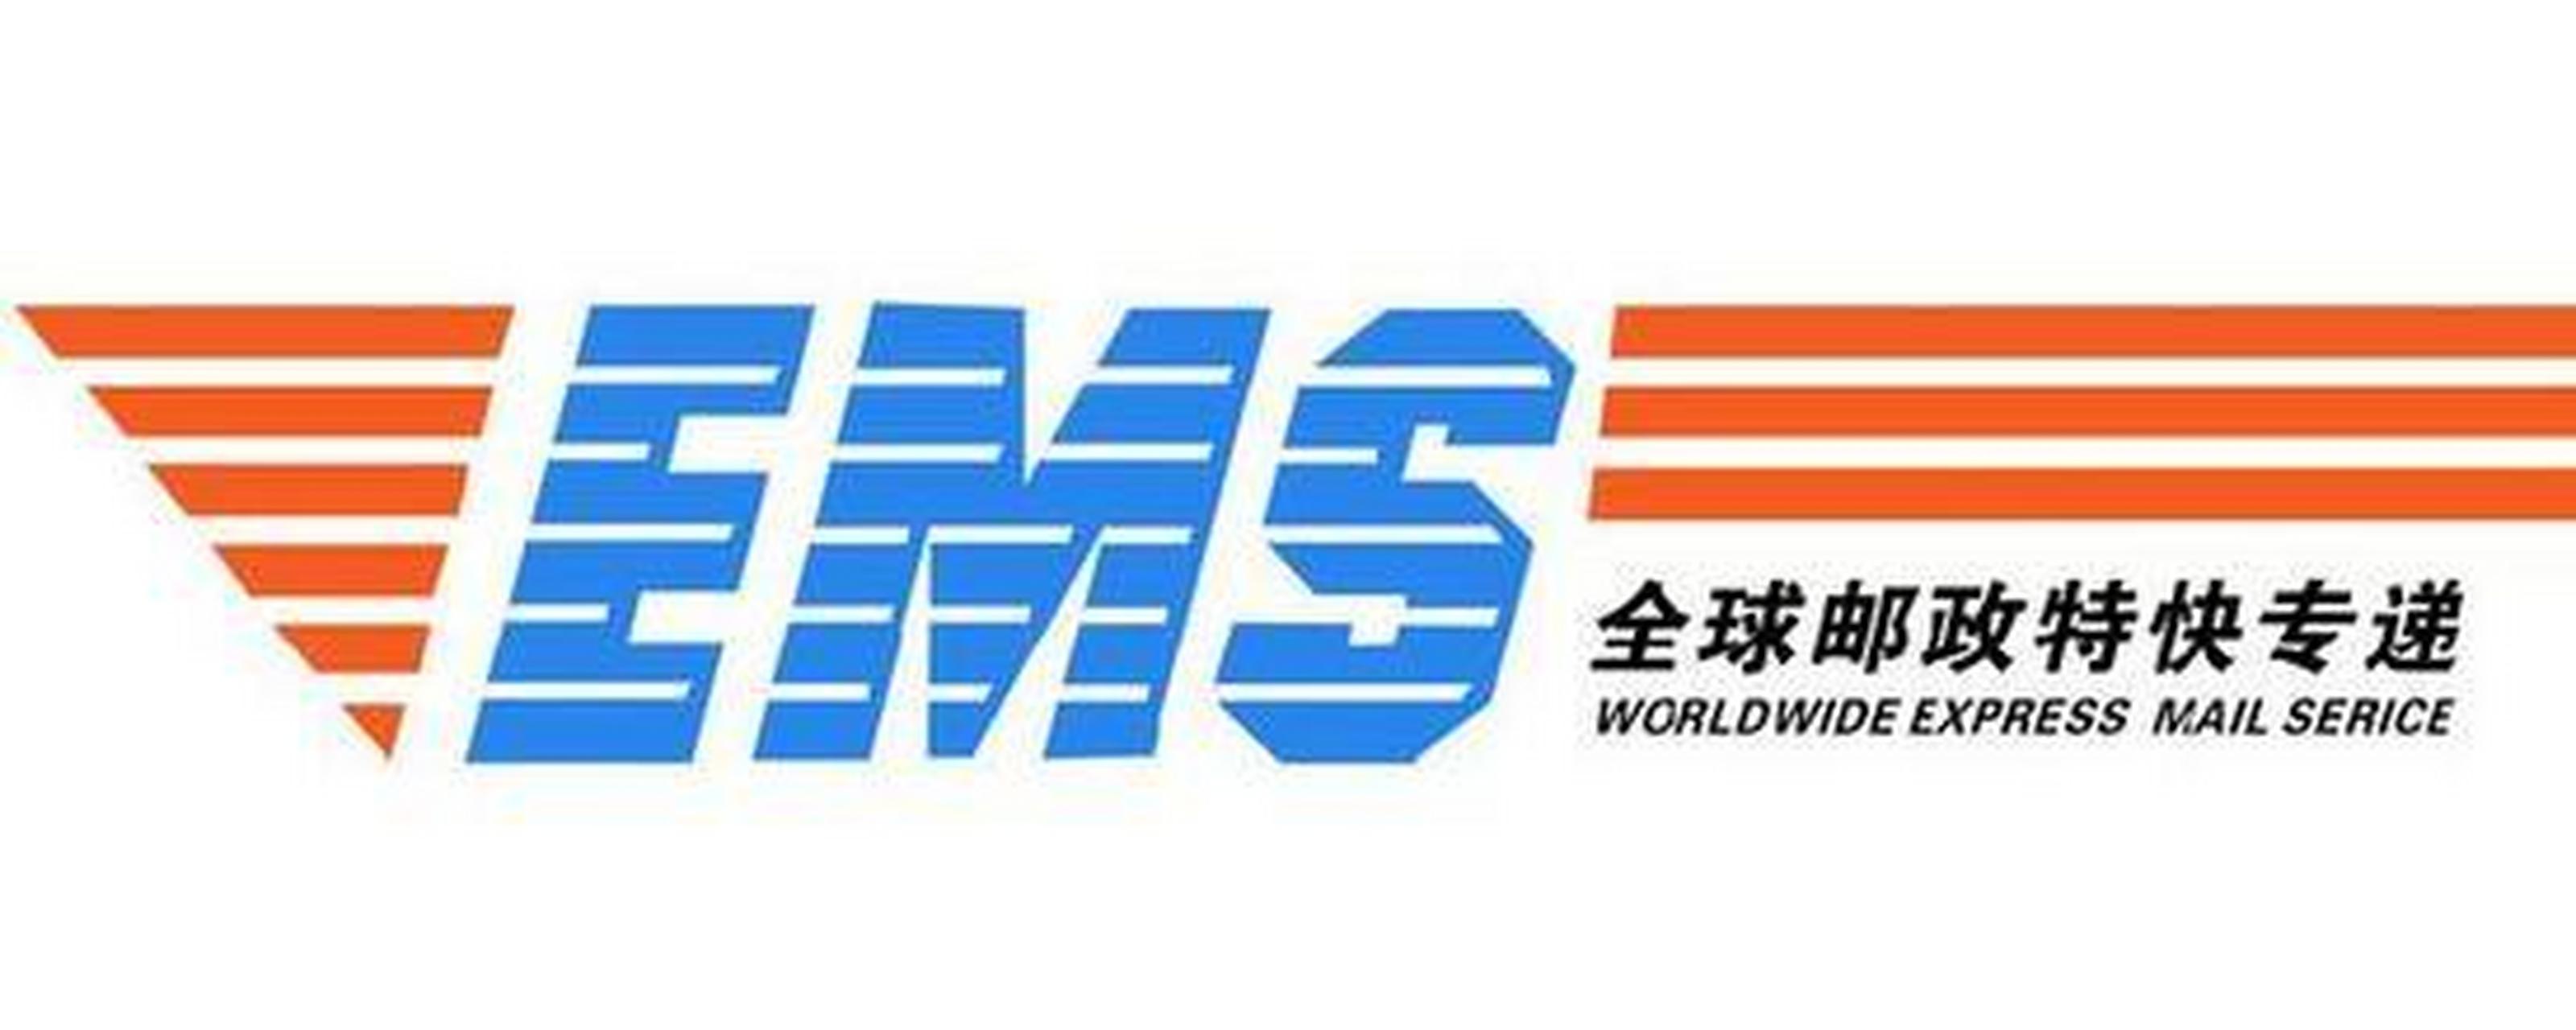 【日本邮政近日宣布,将从2021年6月1日起实行ems特别附加费.